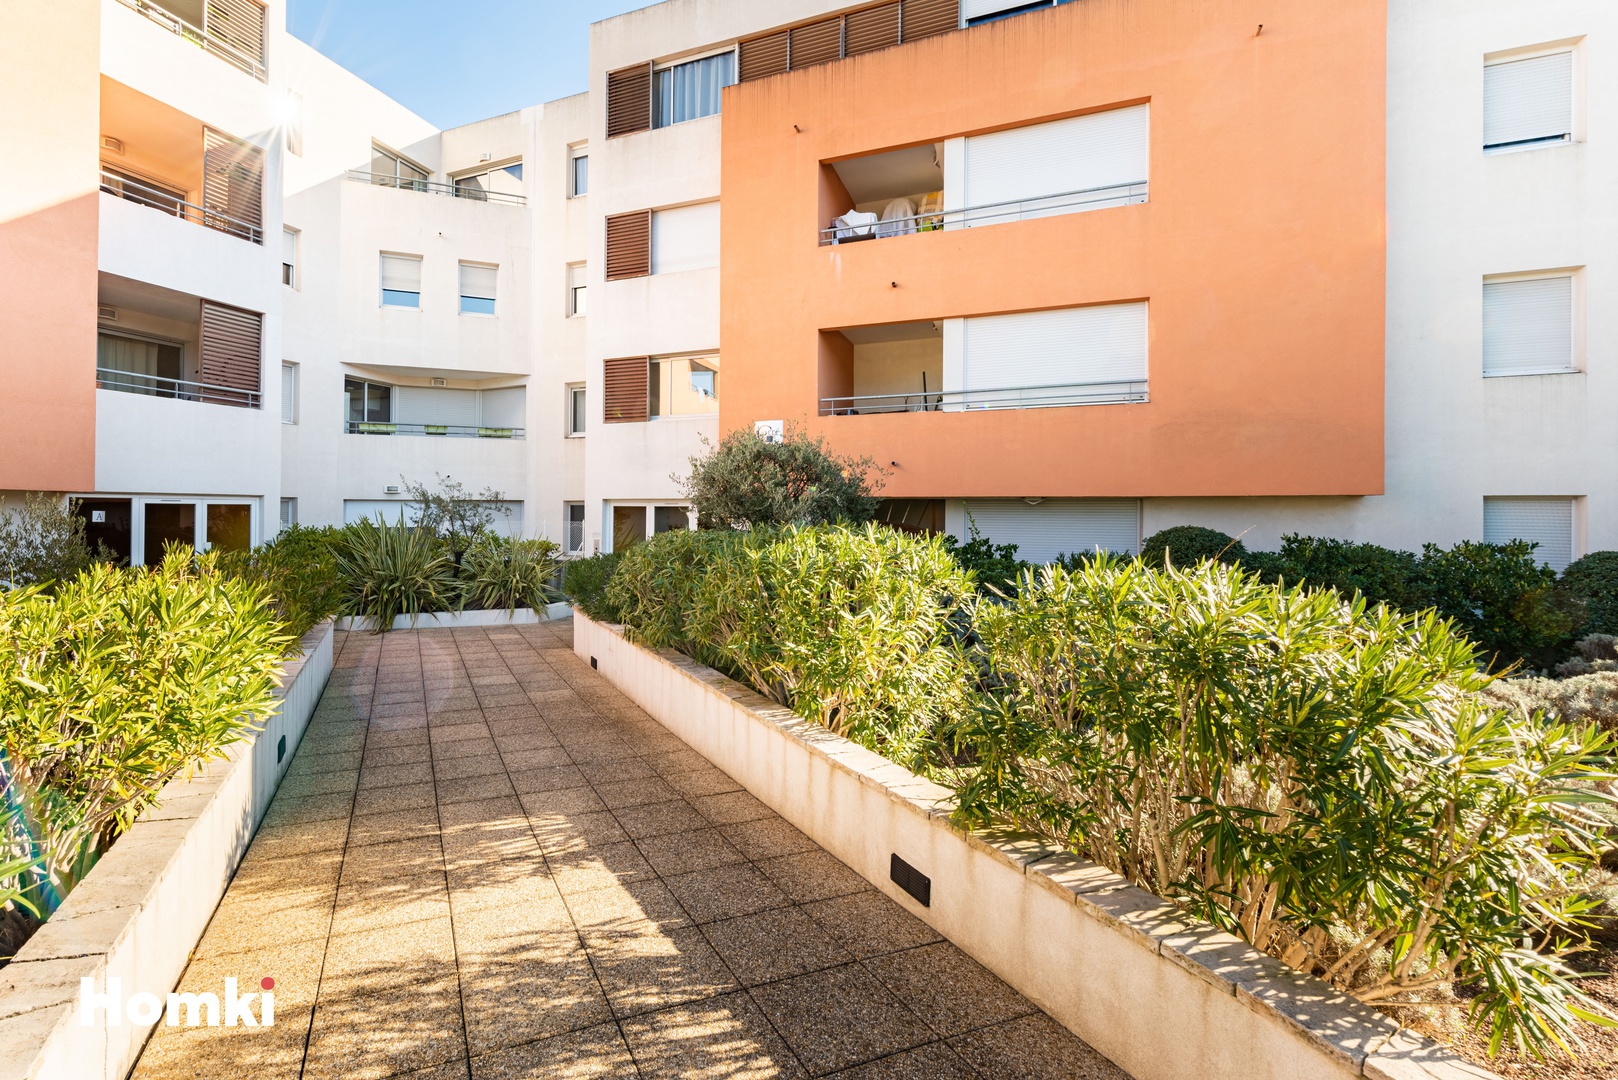 Homki - Vente Appartement  de 65.0 m² à Montpellier 34070